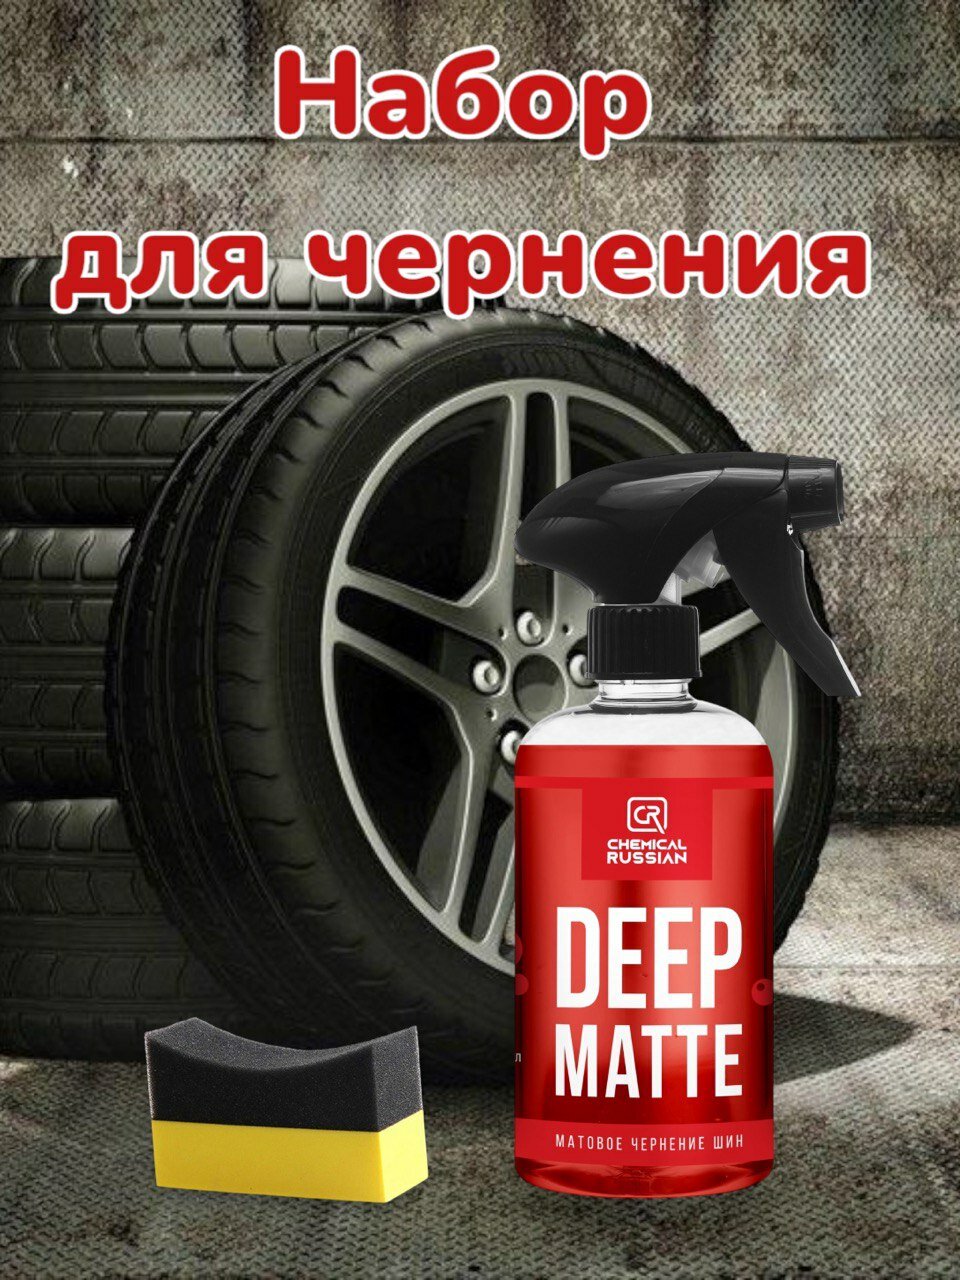 Комплект для чернения резины - Deep Matte с аппликатором Tire pad желтый Chemical Russian